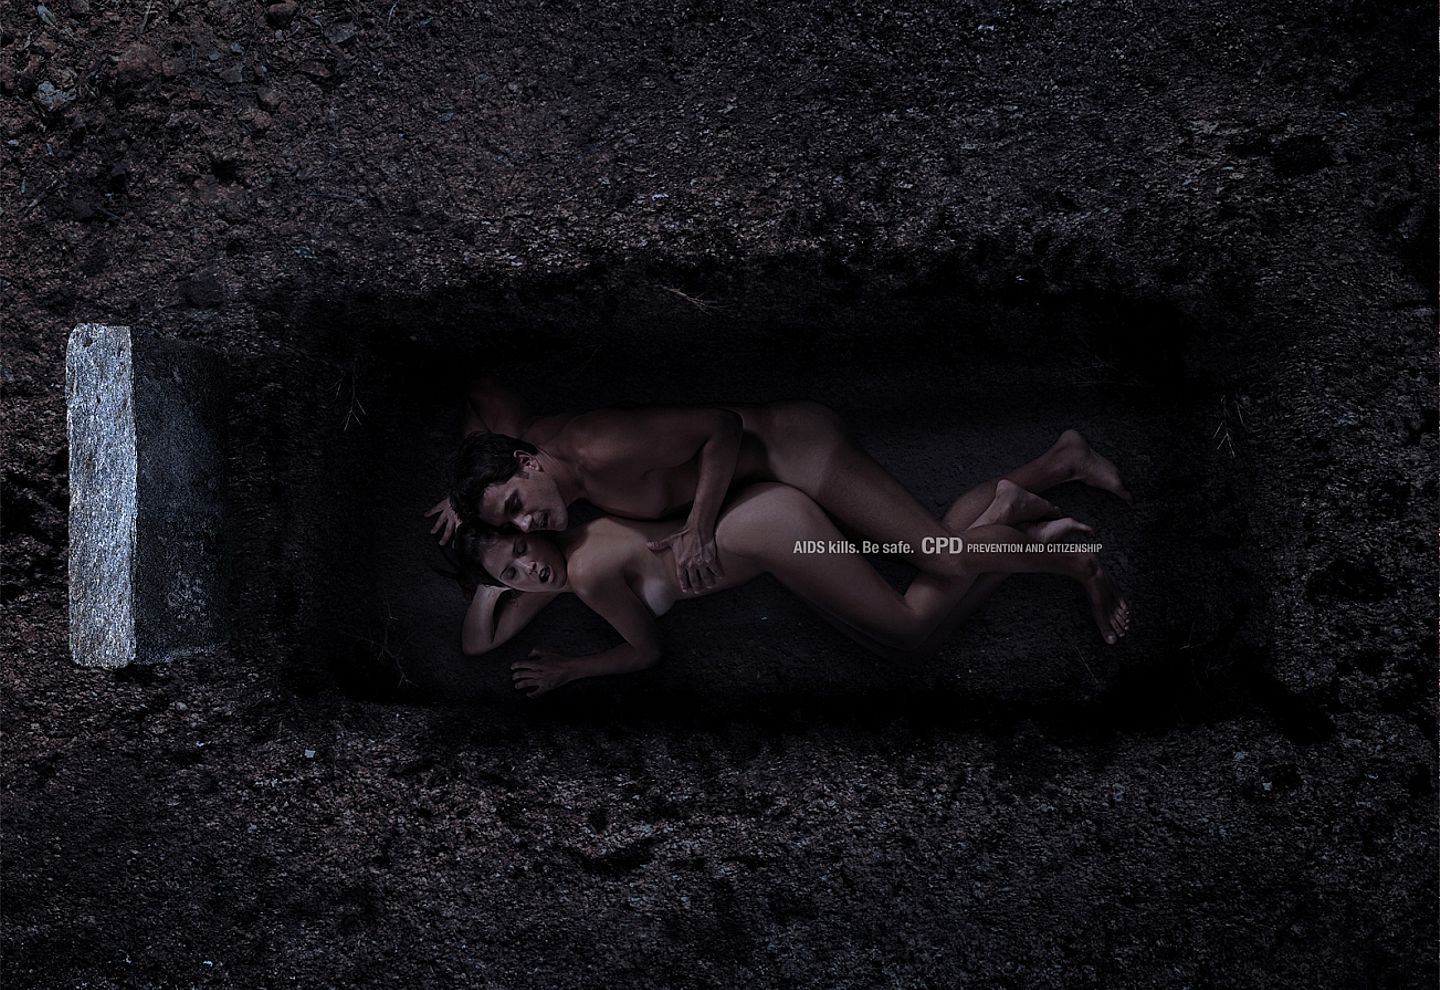 социальная реклама против спида - секс в могиле, реклама с обнаженным телом фото 10